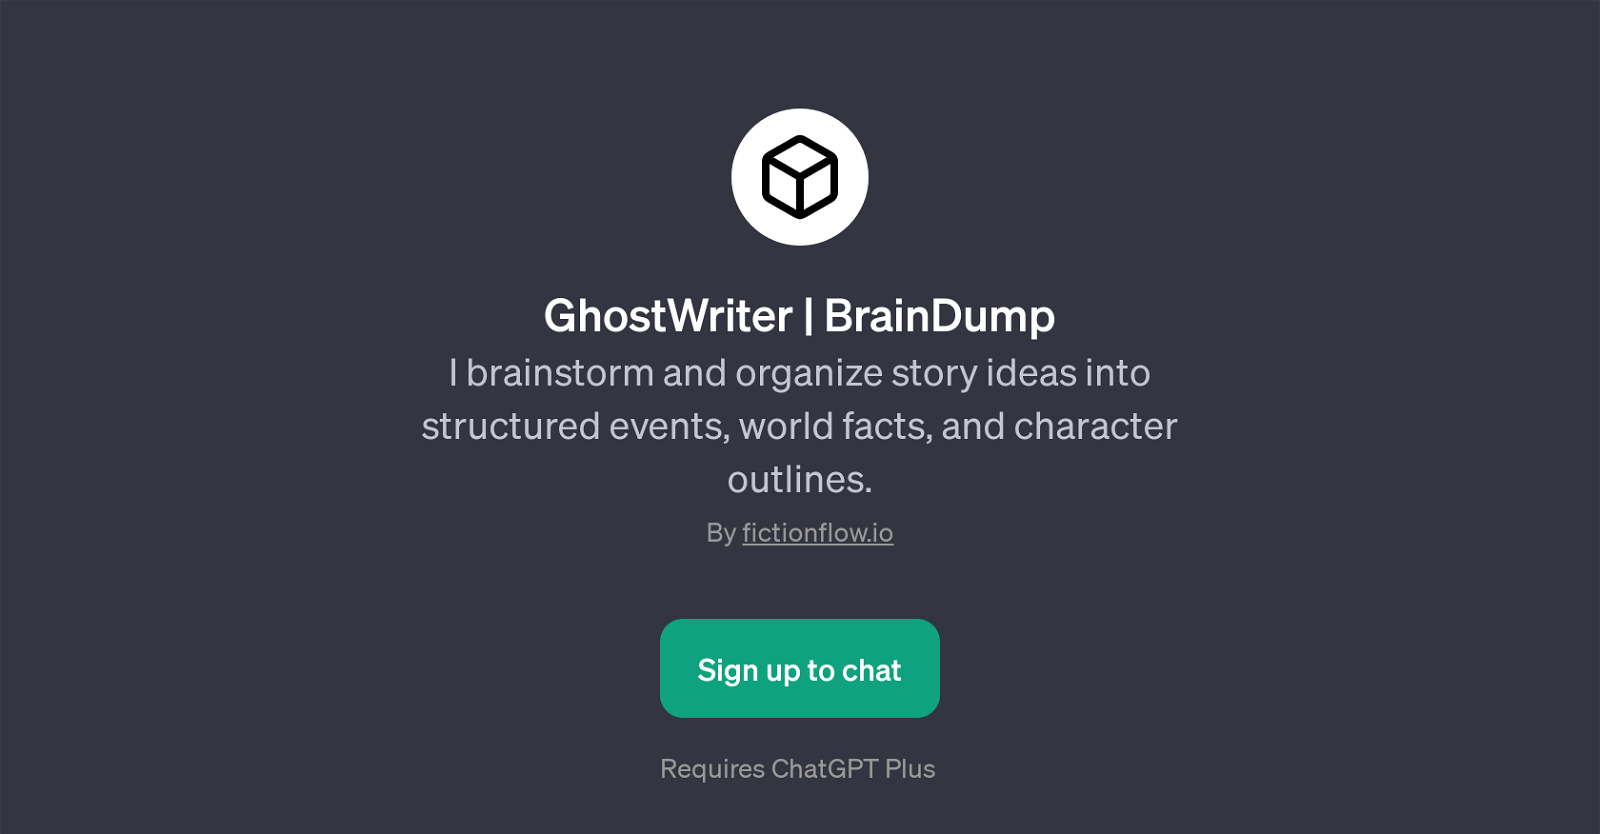 GhostWriter | BrainDump website